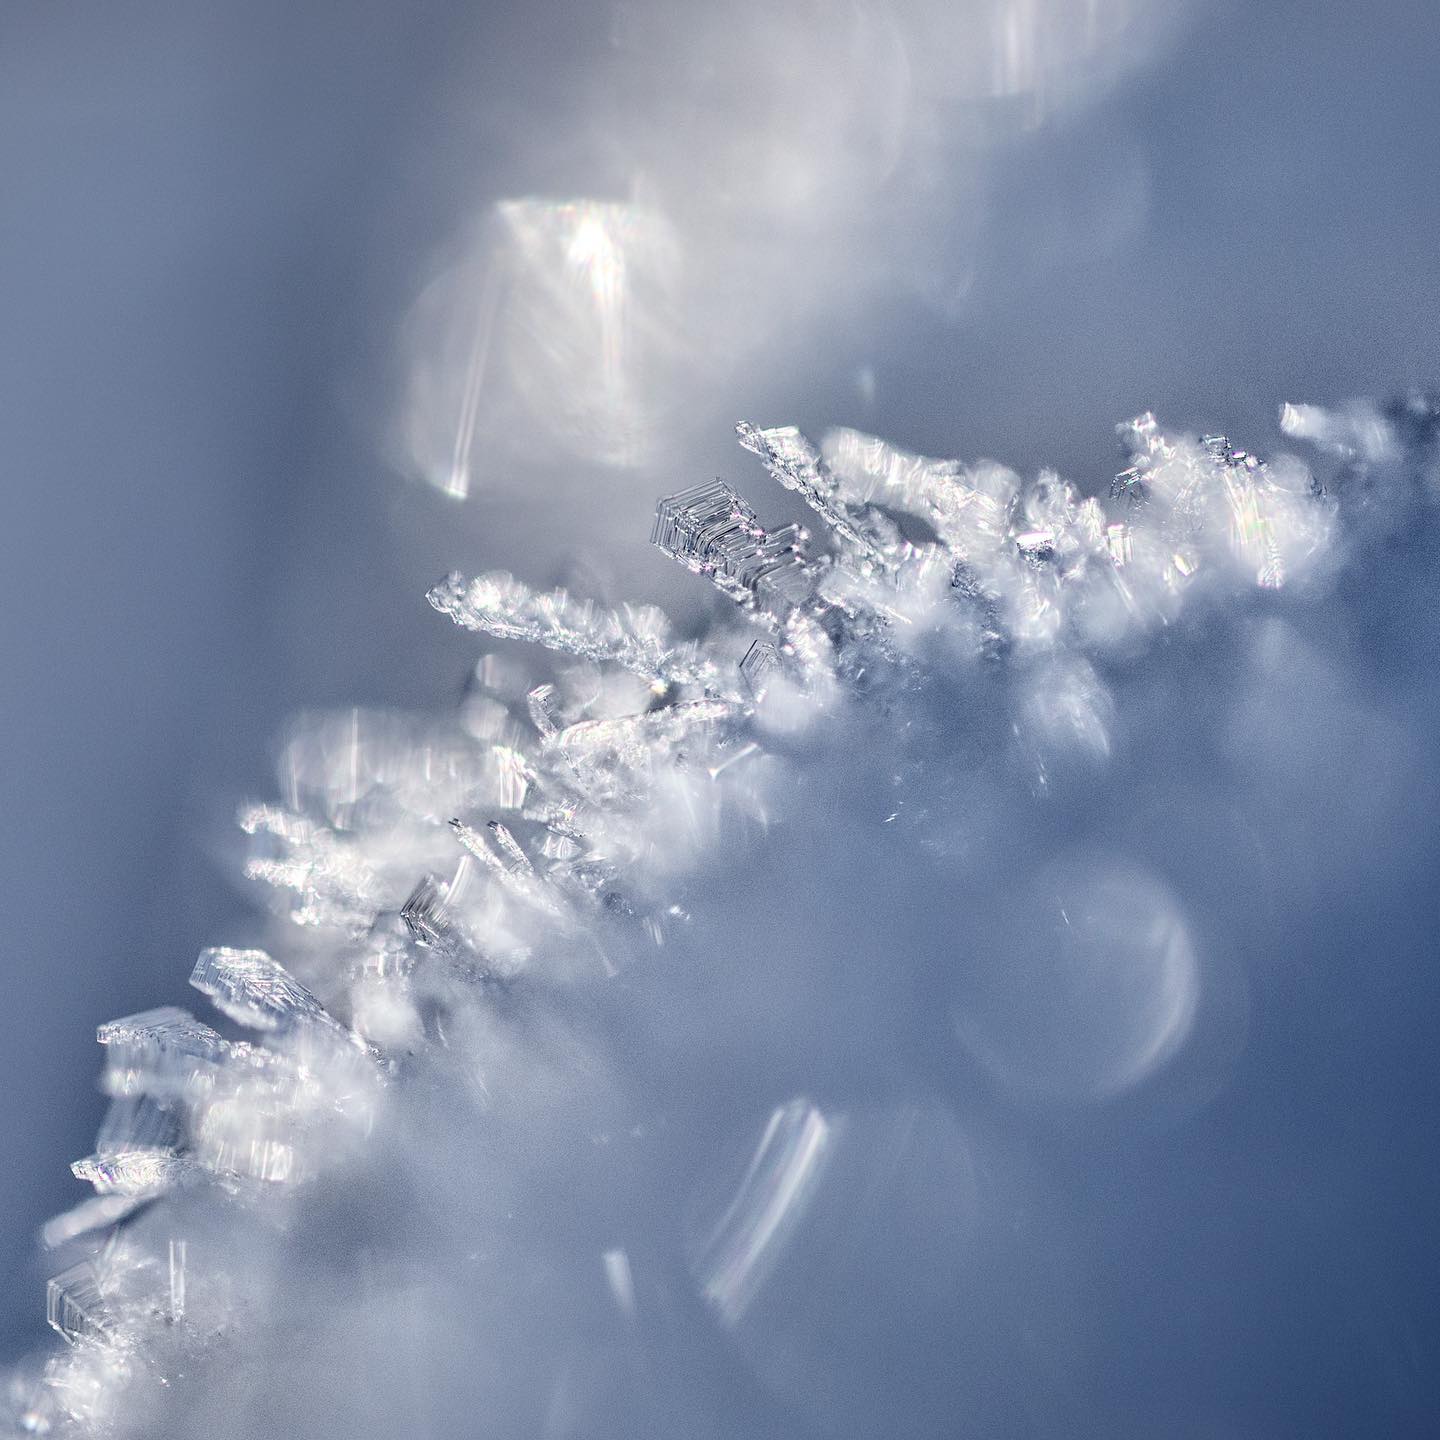 𝘍𝘳𝘰𝘴𝘵𝘪𝘨 𝘴𝘵𝘳𝘢𝘩𝘭𝘦𝘯𝘥𝘦𝘳 𝘈𝘯𝘣𝘭𝘪𝘤𝘬.
.
.
.
#macrophotography #macro #macrofotografie #eisblumen #iceflower #winterwonderland #frozen #gefroren